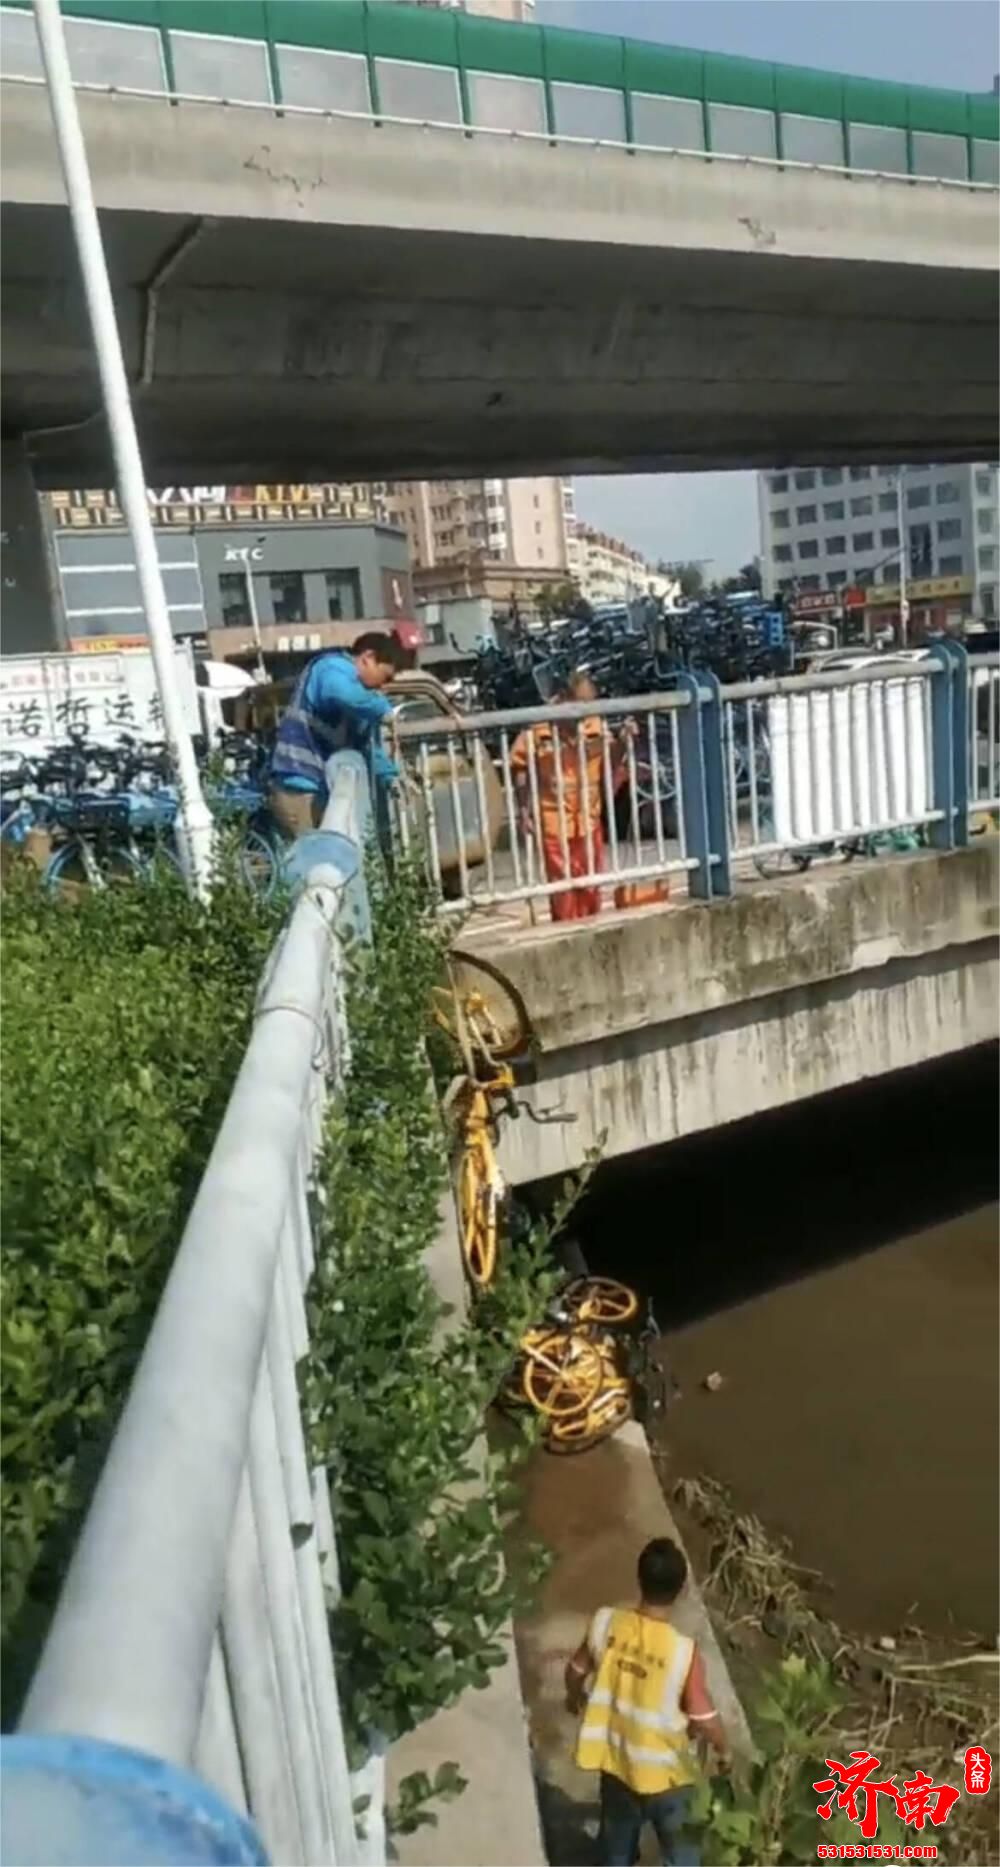 近20辆共享单车扔进河 济南哈啰单车:目前警方已立案